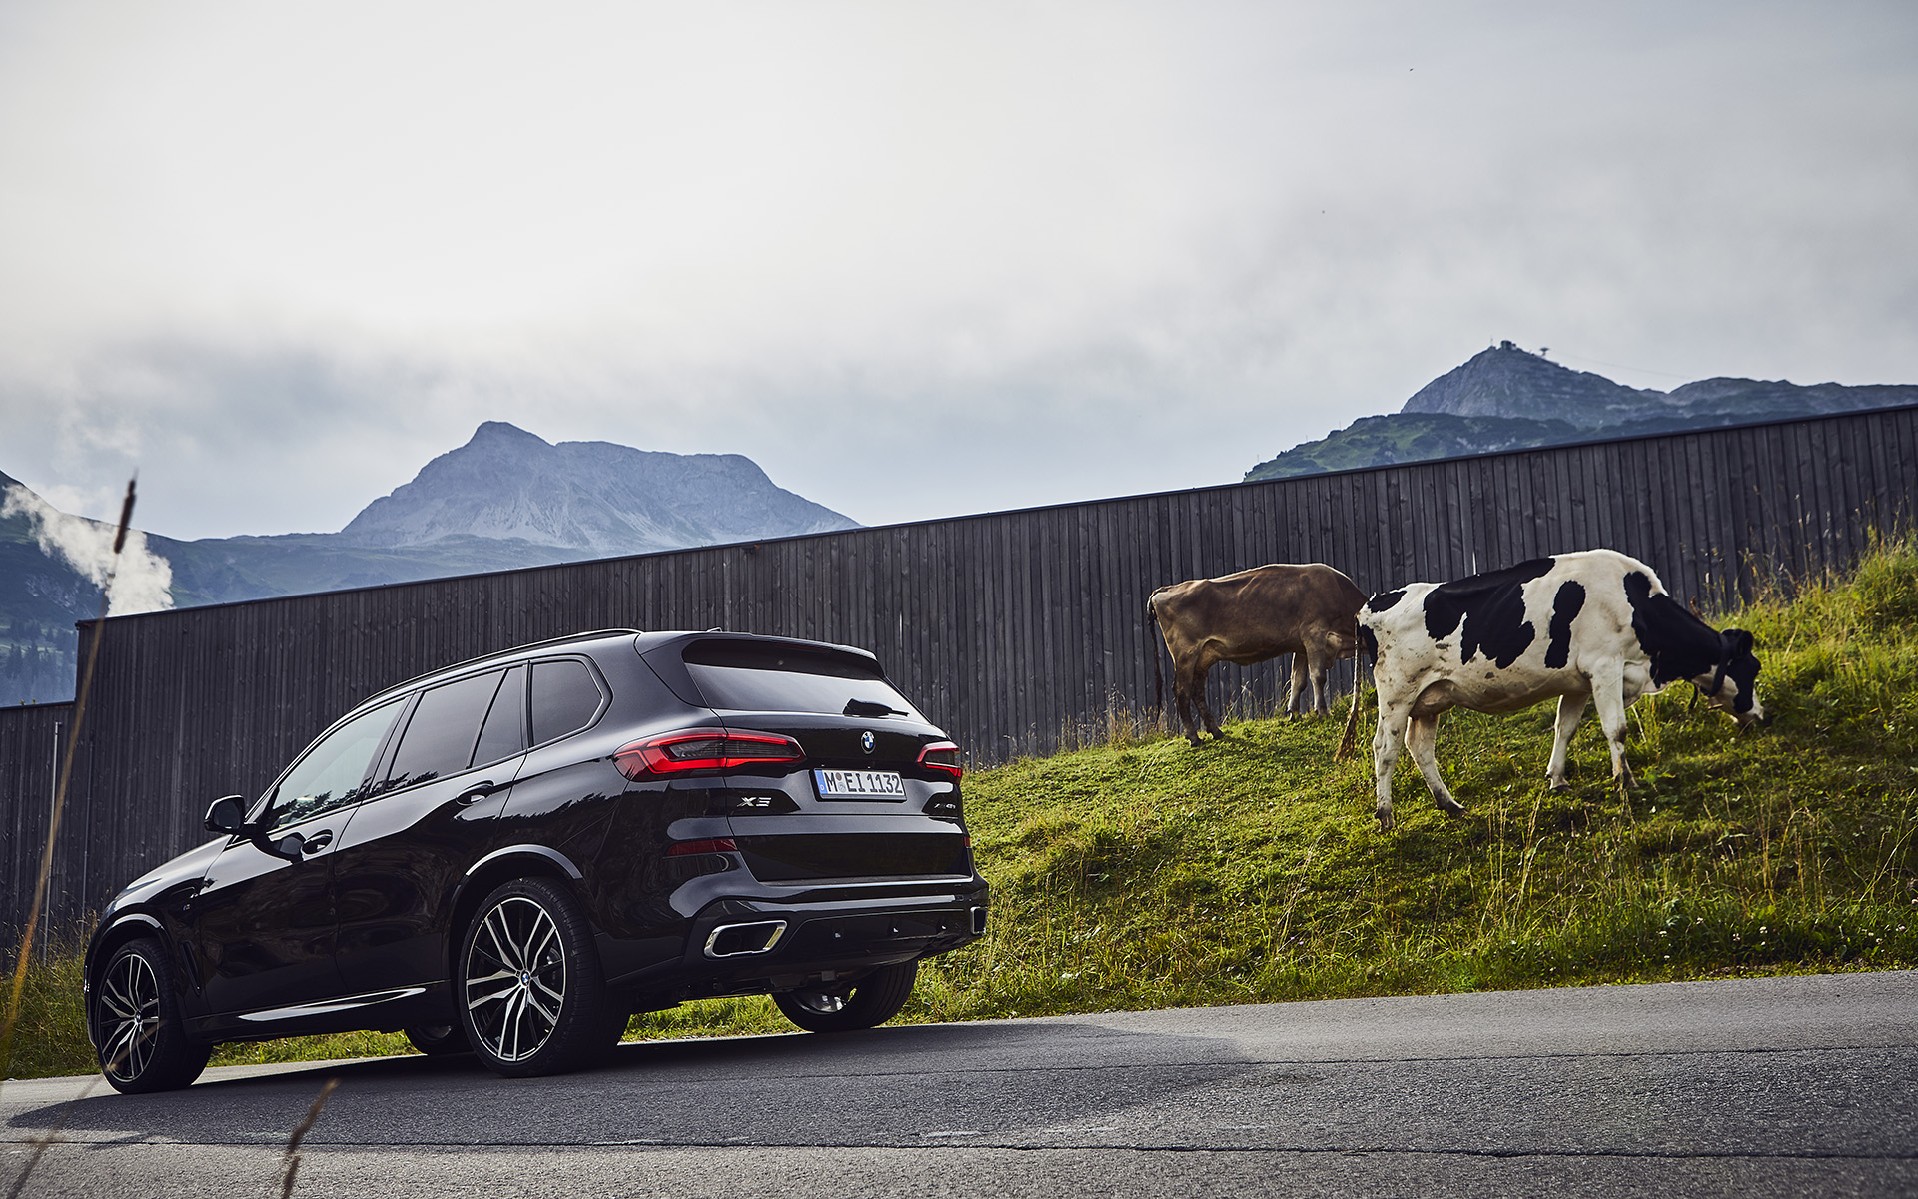 H πρώτη εξηλεκτρισμένη BMW M έρχεται το 2021 | Drive